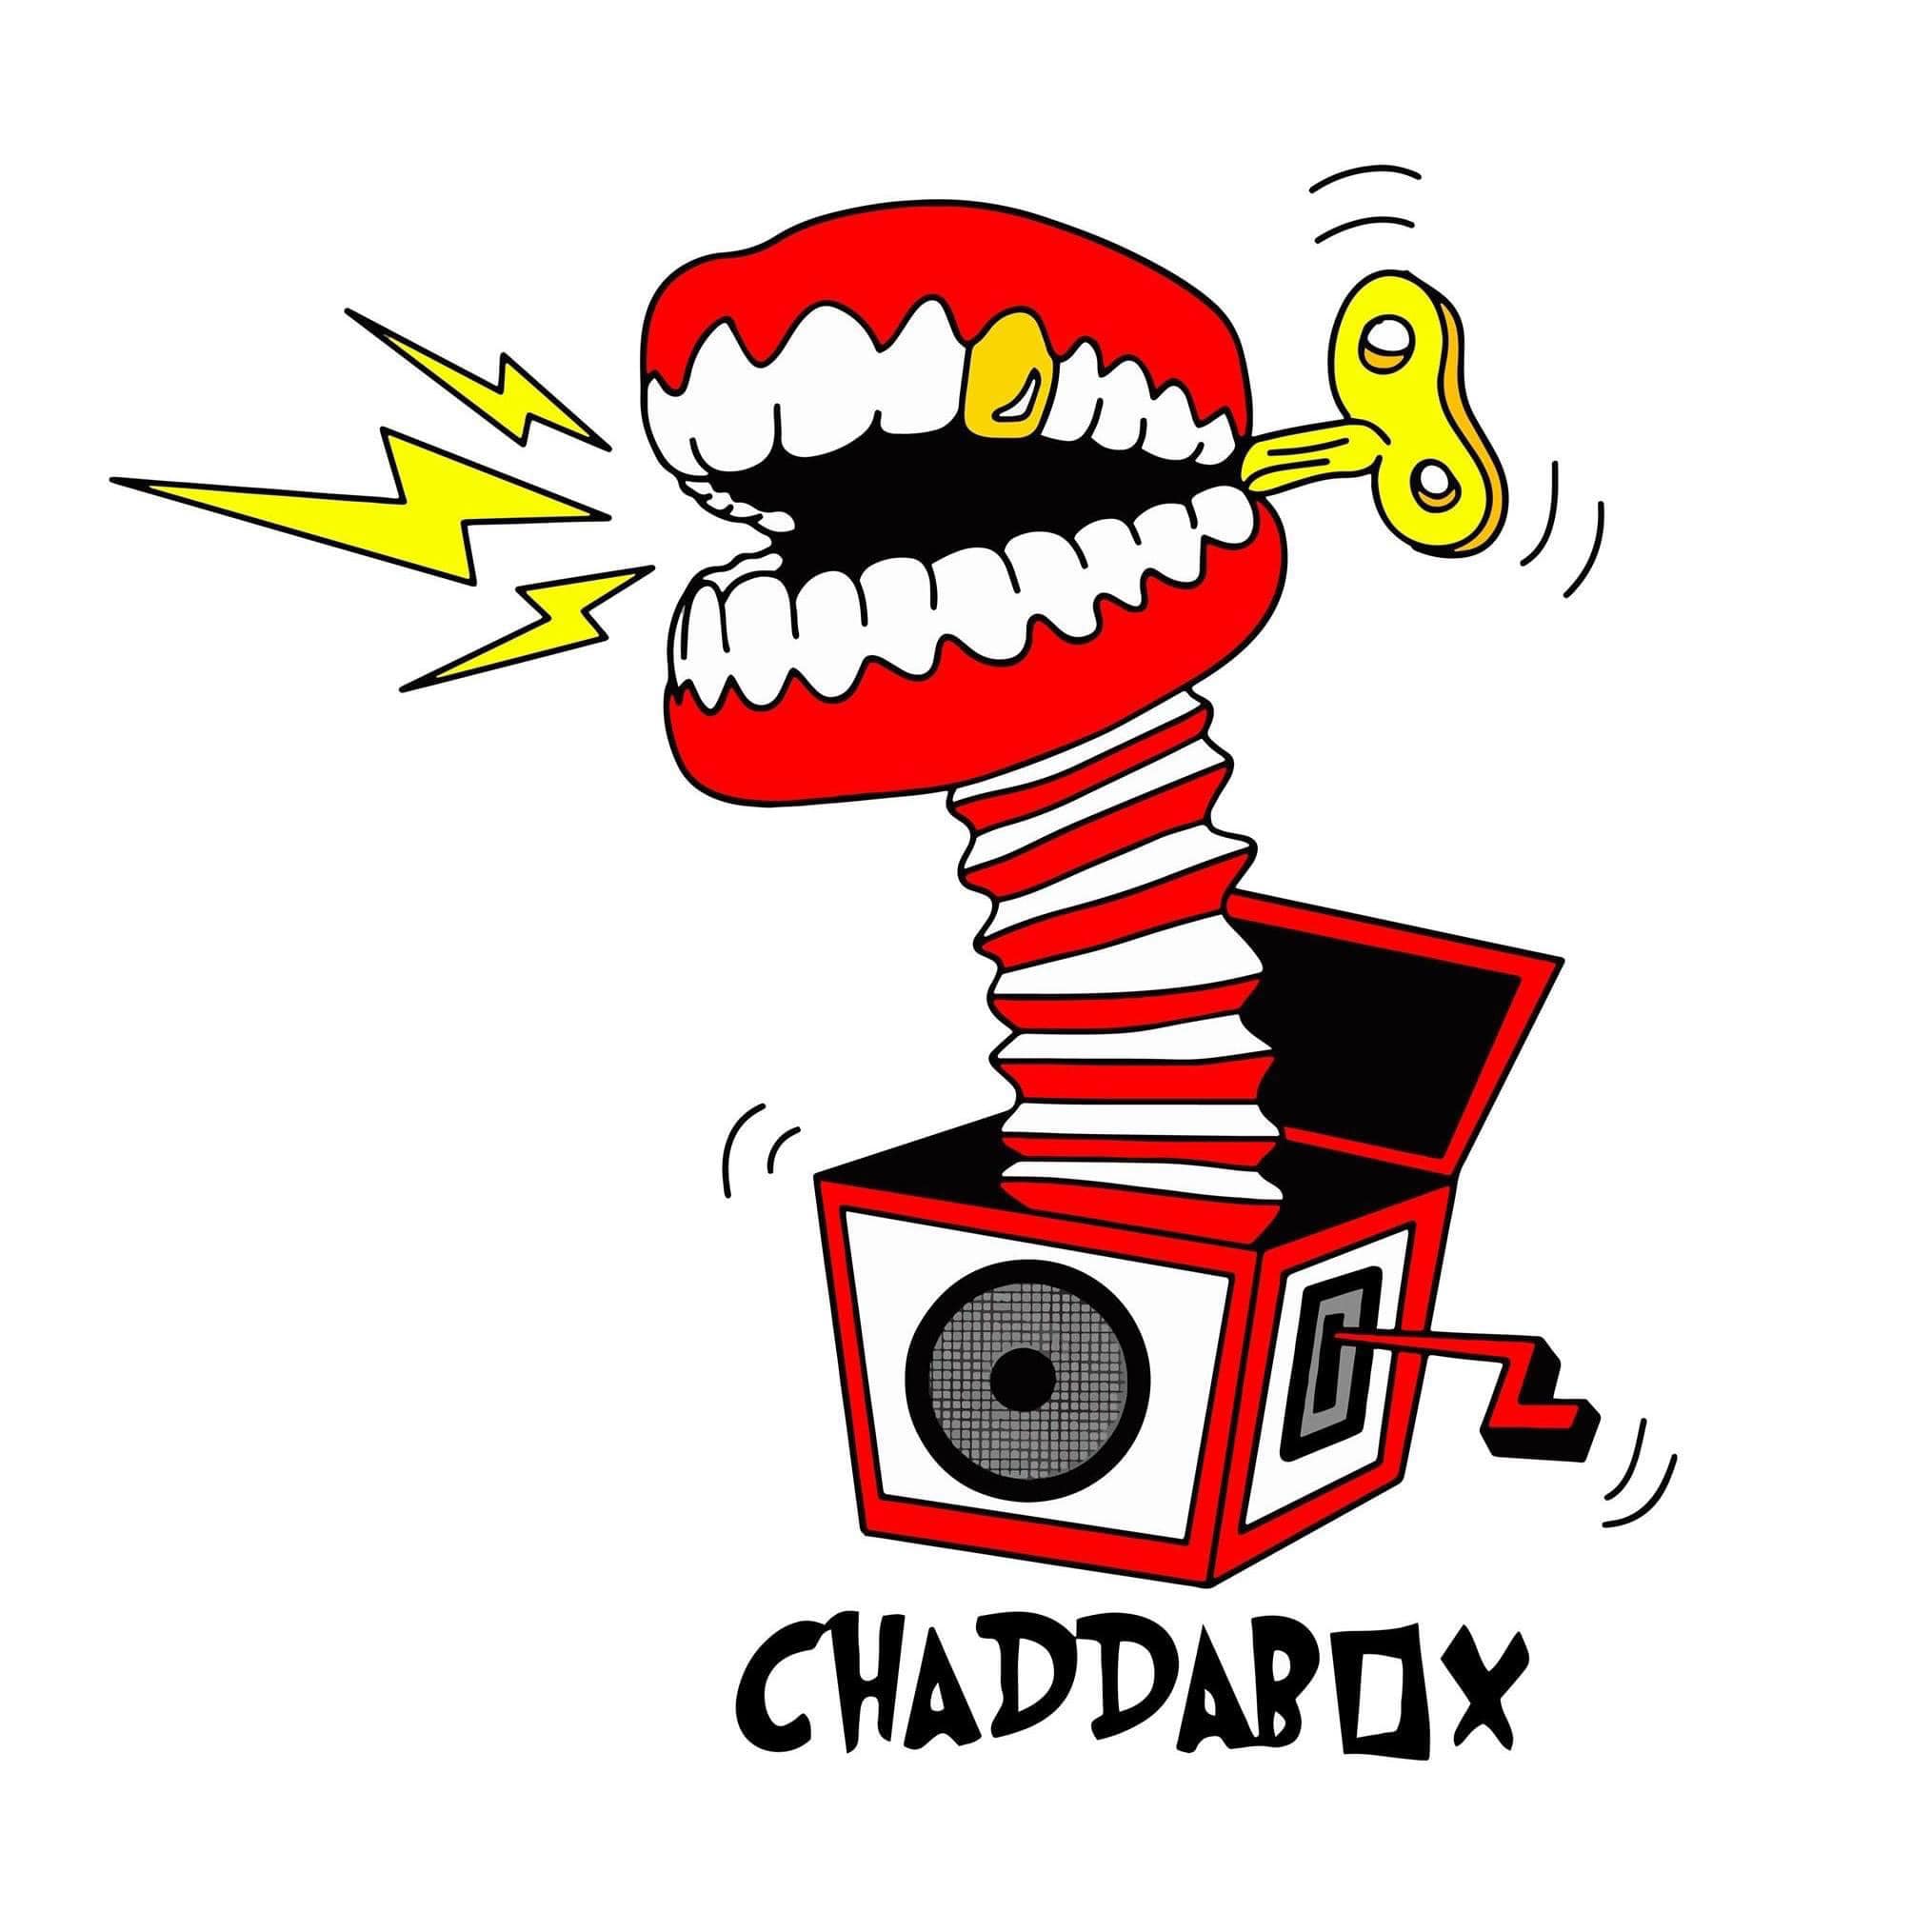 Chaddabox